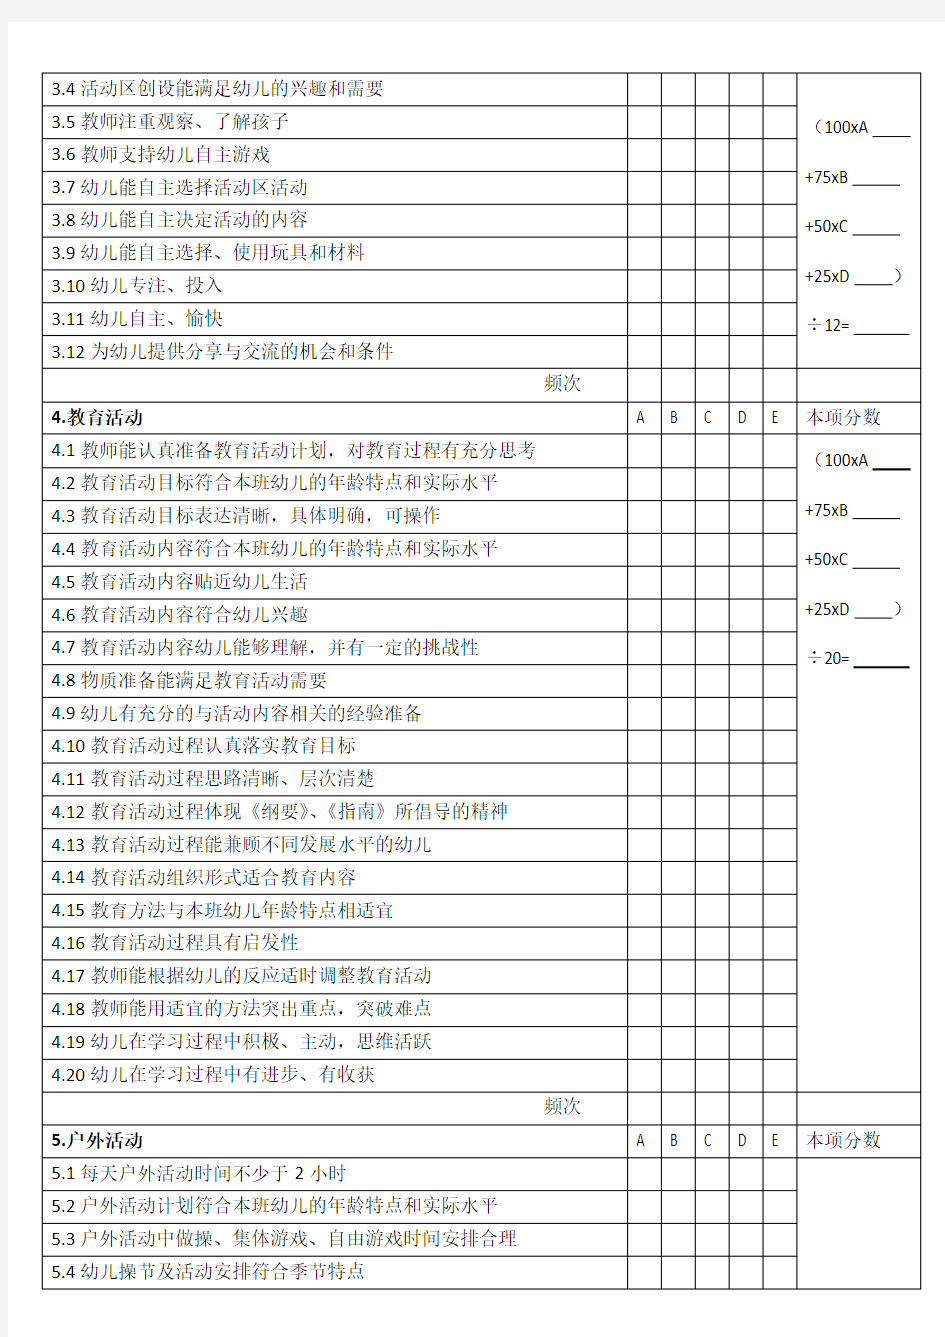 北京市幼儿园课程综合评价标准及积分表(试行)